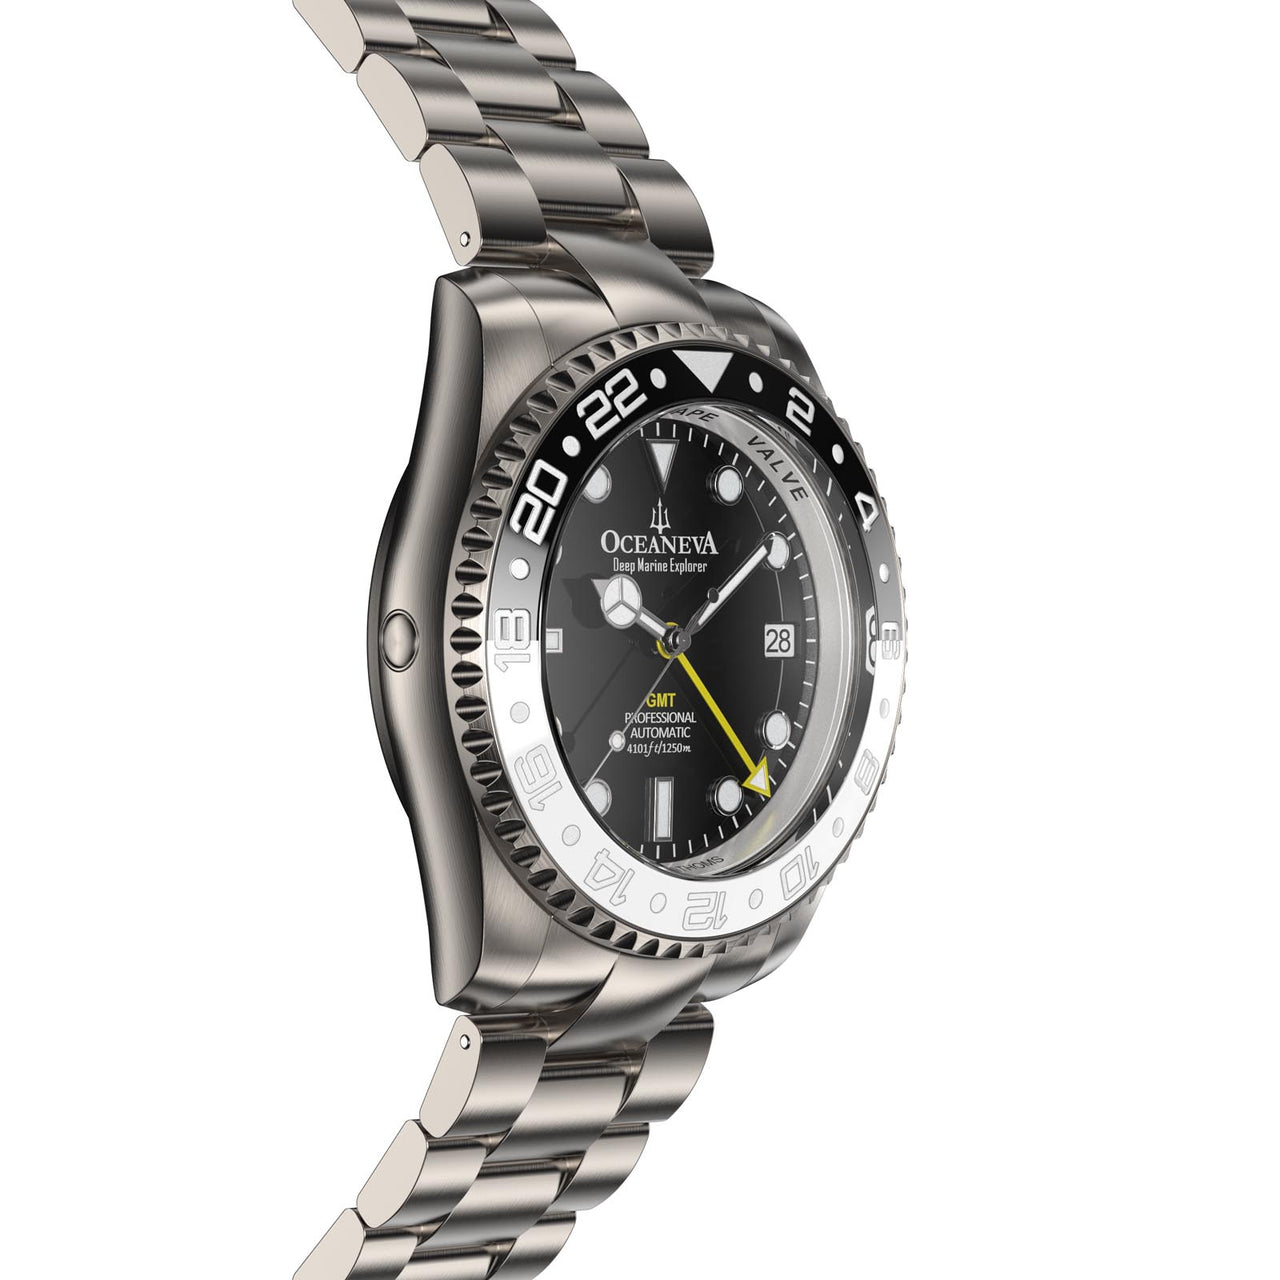 Robust Oceaneva Titanium Watch with 42mm case diameter